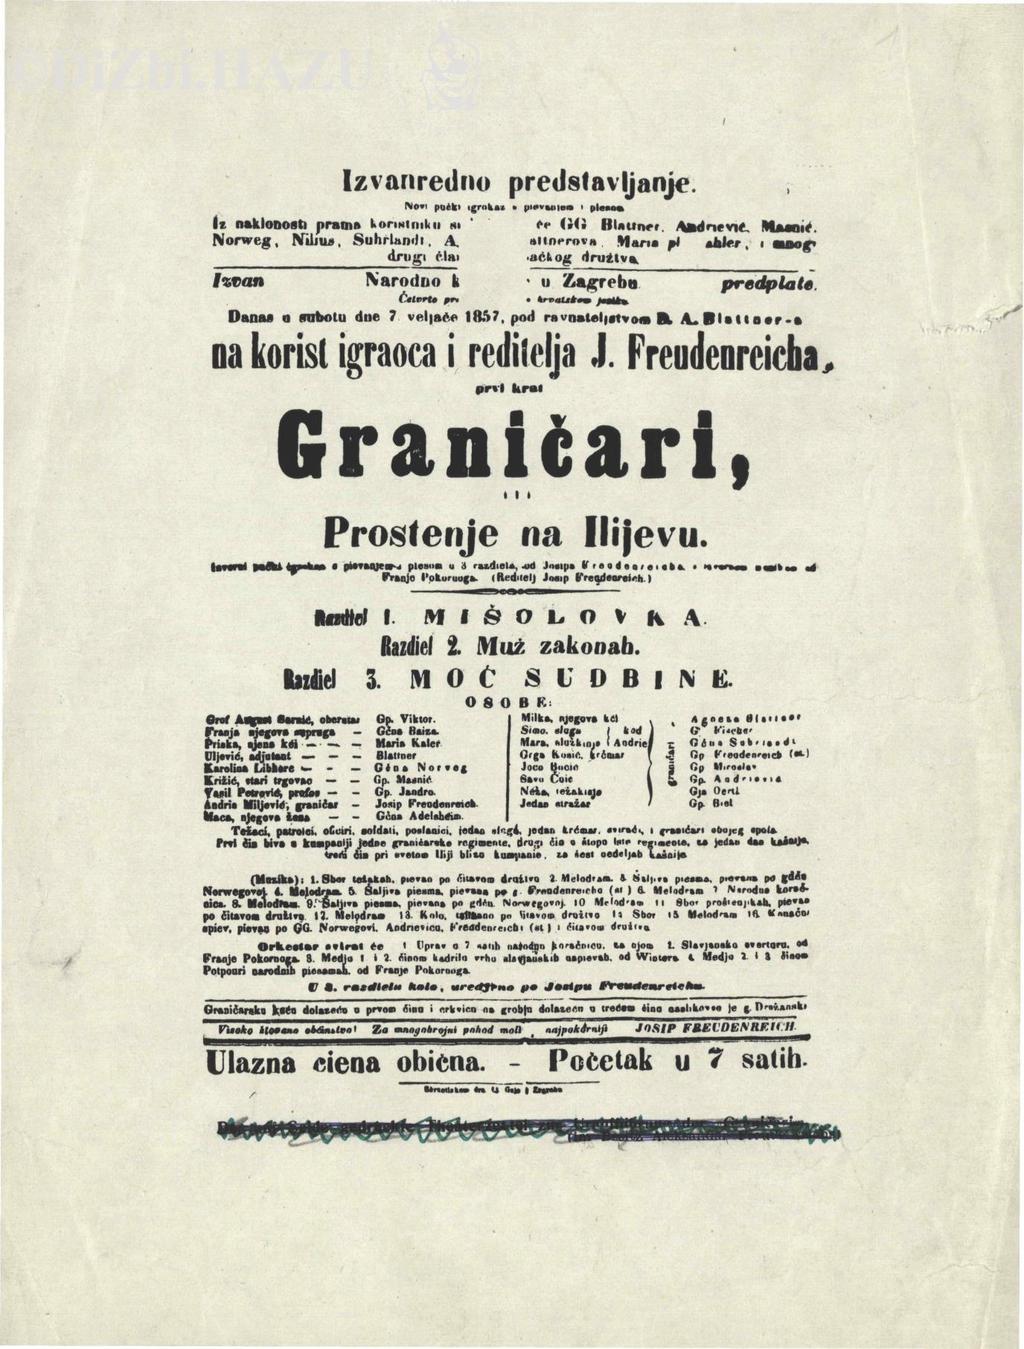 Graničari, izvorni pučki igrokaz u 3 razdjela od Josipa Freudenreicha s izvornom glazbom od Franje Pokornoga, 1857. http://dizbi.hazu.hr/object/5337 Muzika: 1.